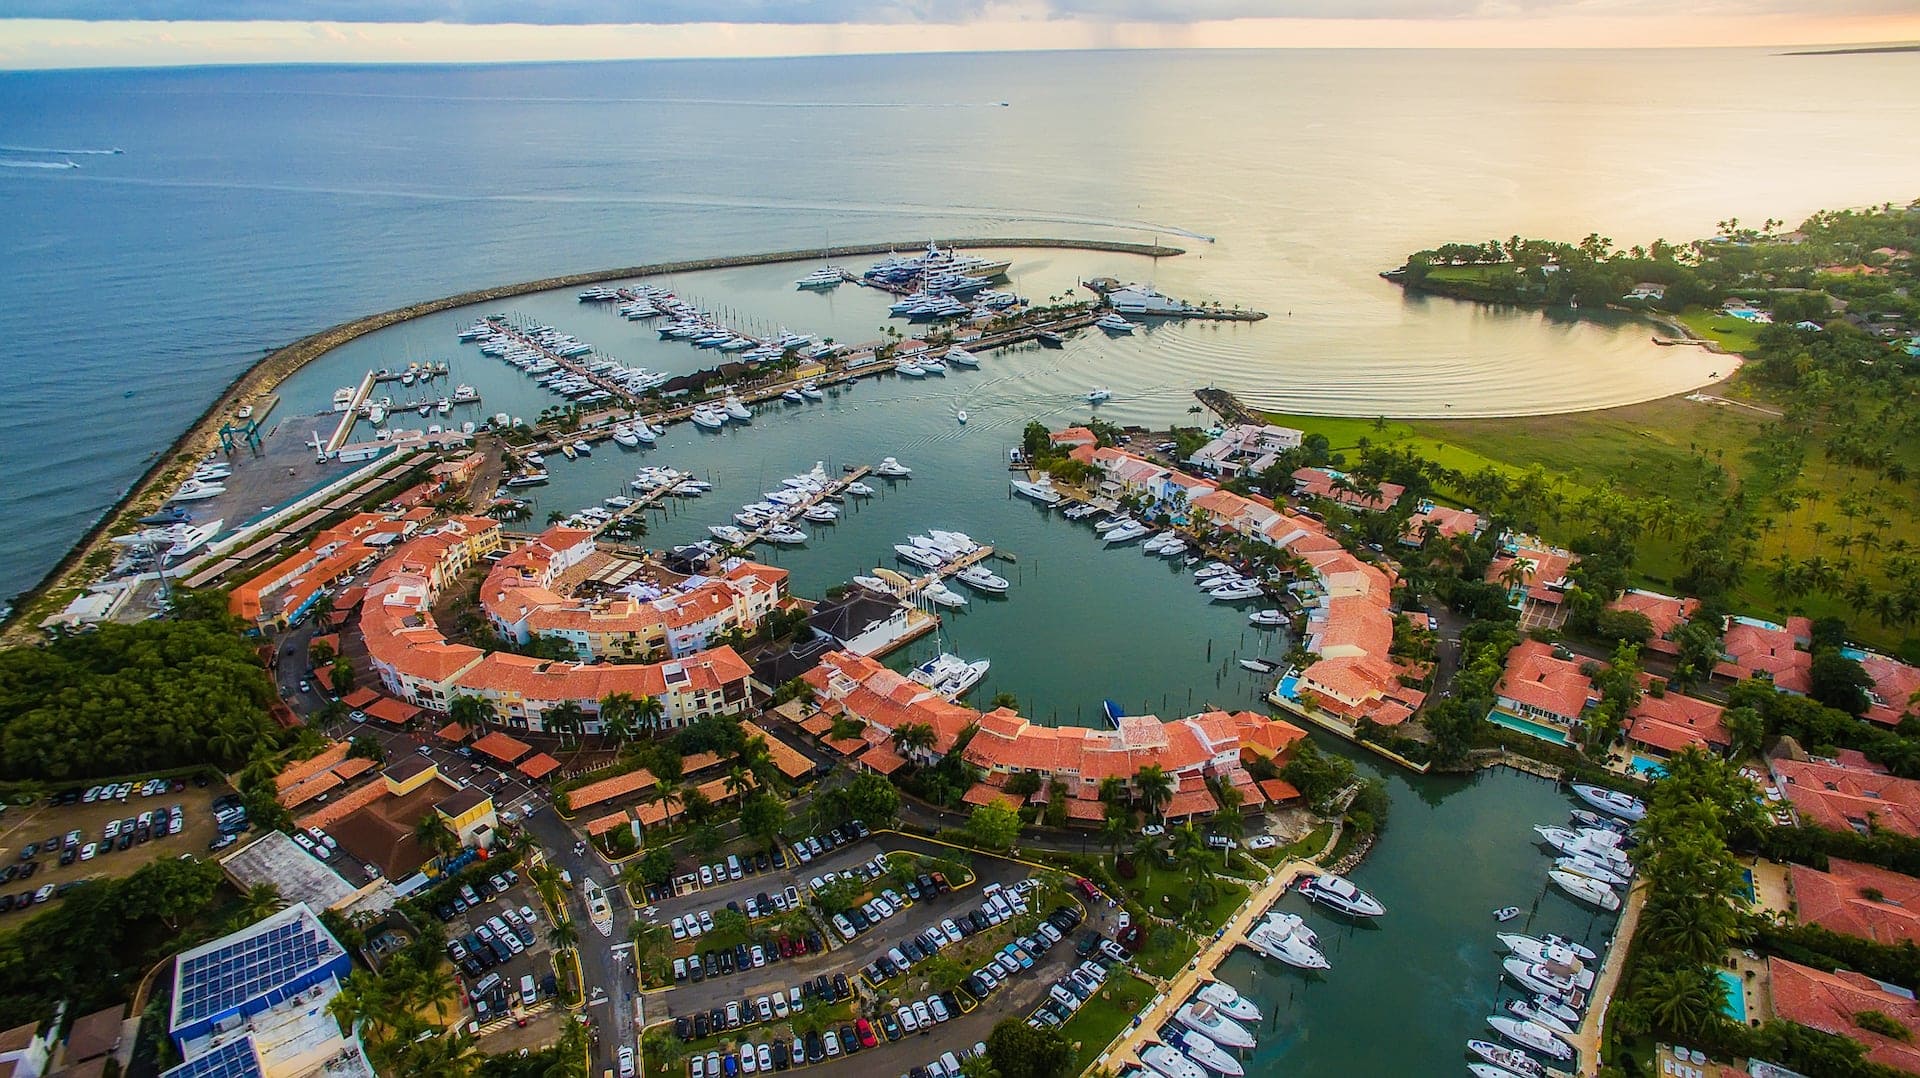 Aerial View of La Marina at Casa de Campo Resort & Villas in the Caribbean